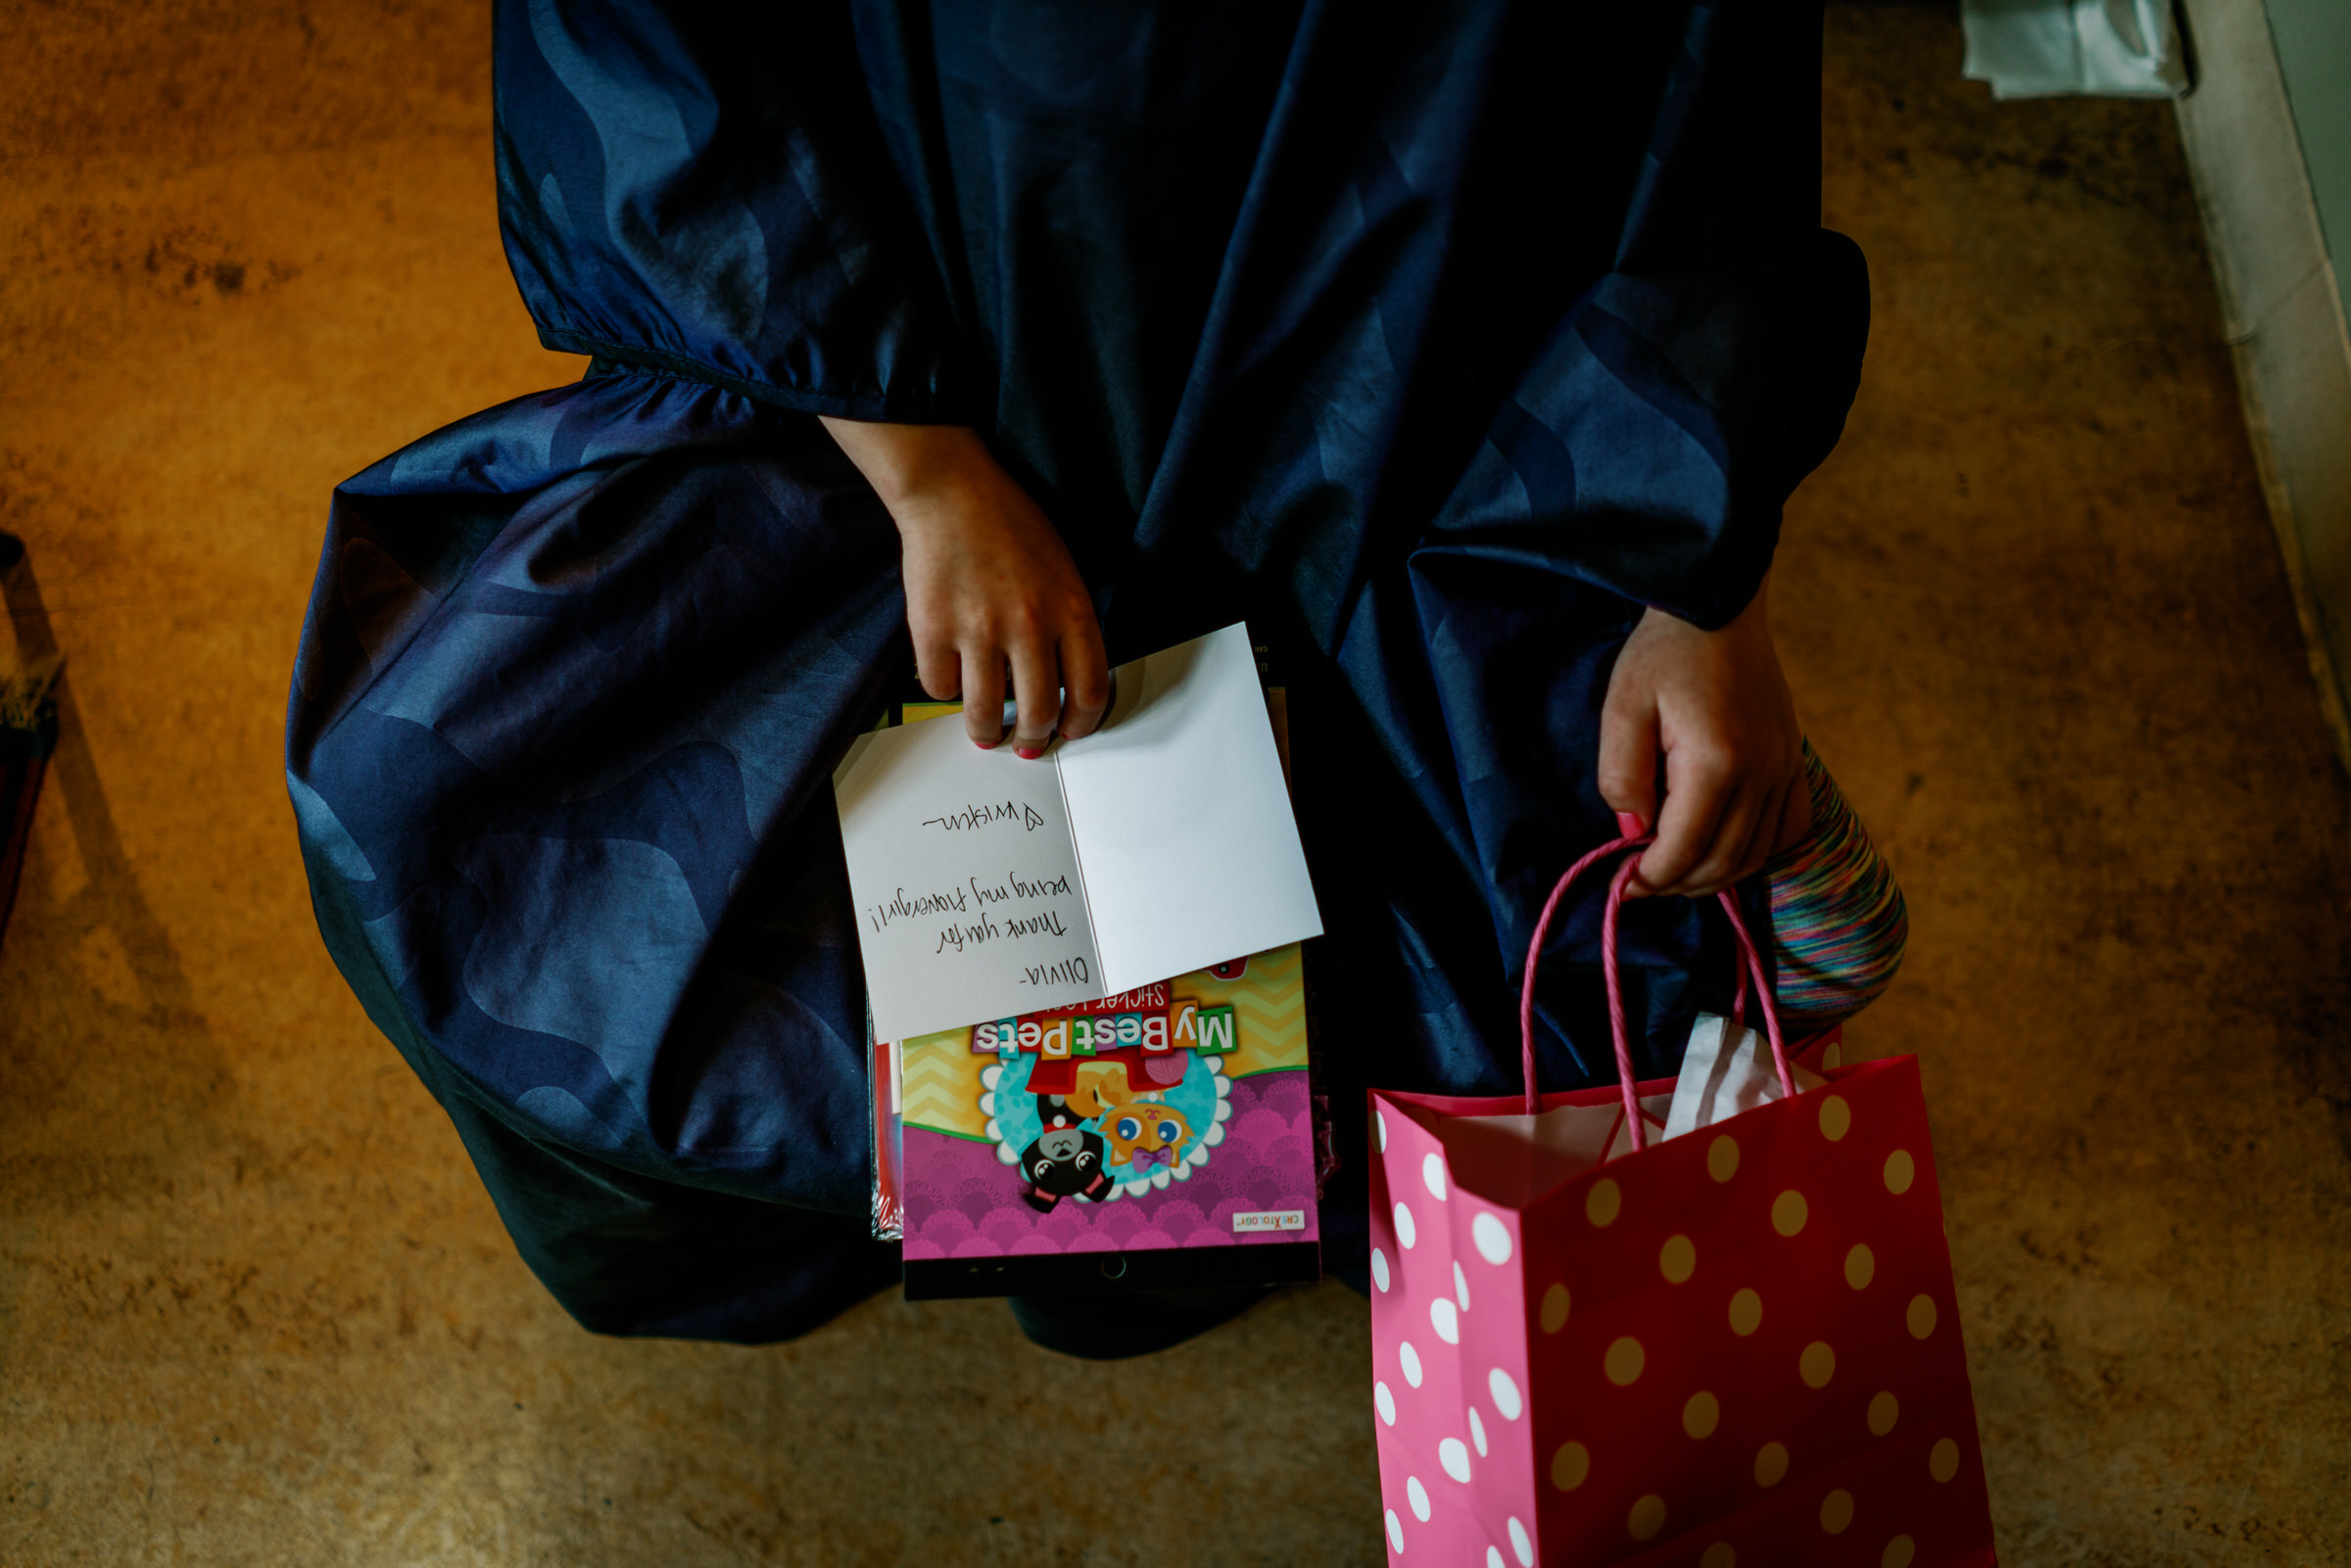 Sleeping Lady Resort weddings: Flower girl looks at her presents